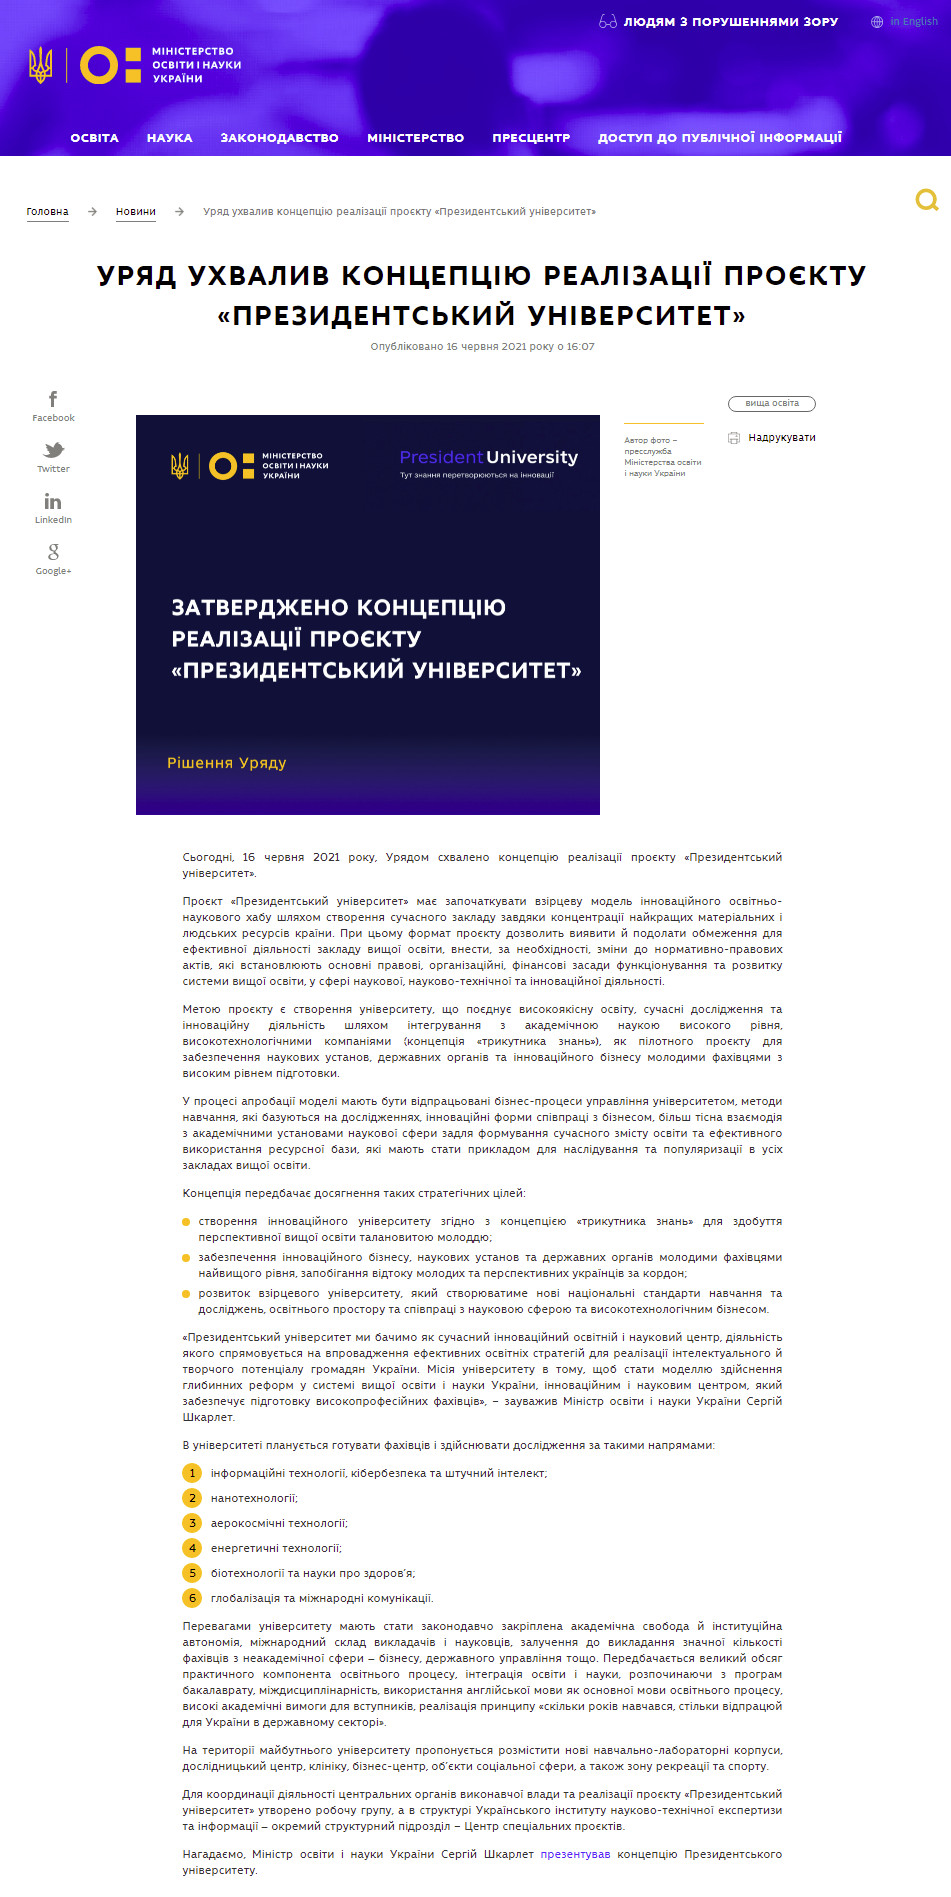 https://mon.gov.ua/ua/news/uryad-uhvaliv-koncepciyu-realizaciyi-proyektu-prezidentskij-universitet